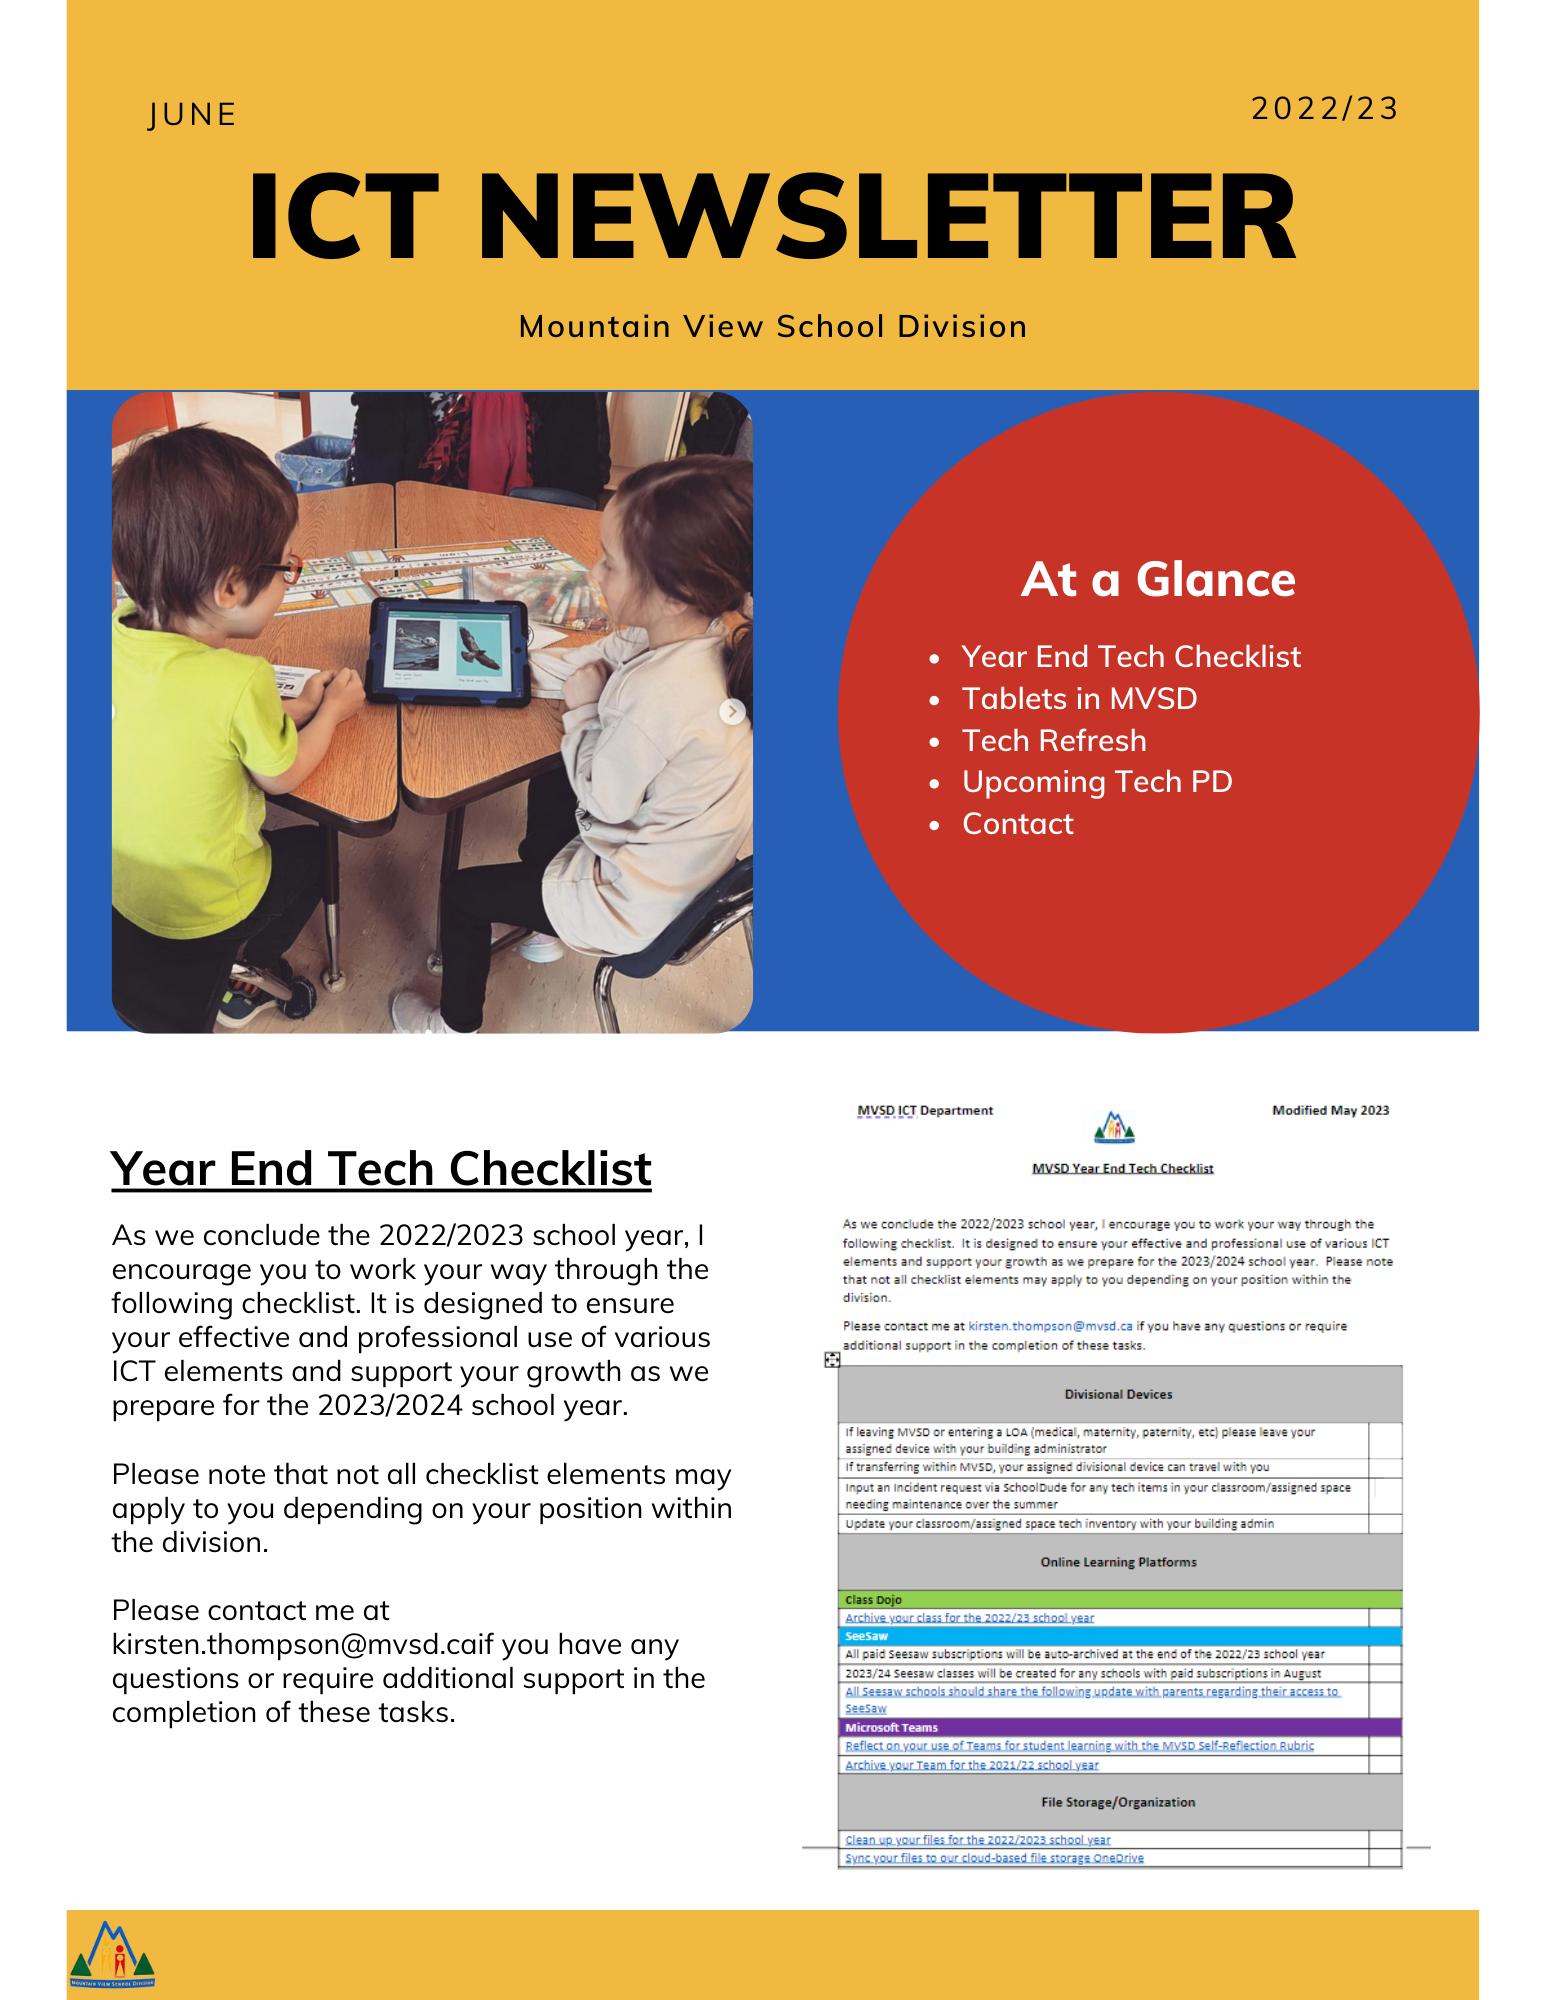 June ICT Newsletter